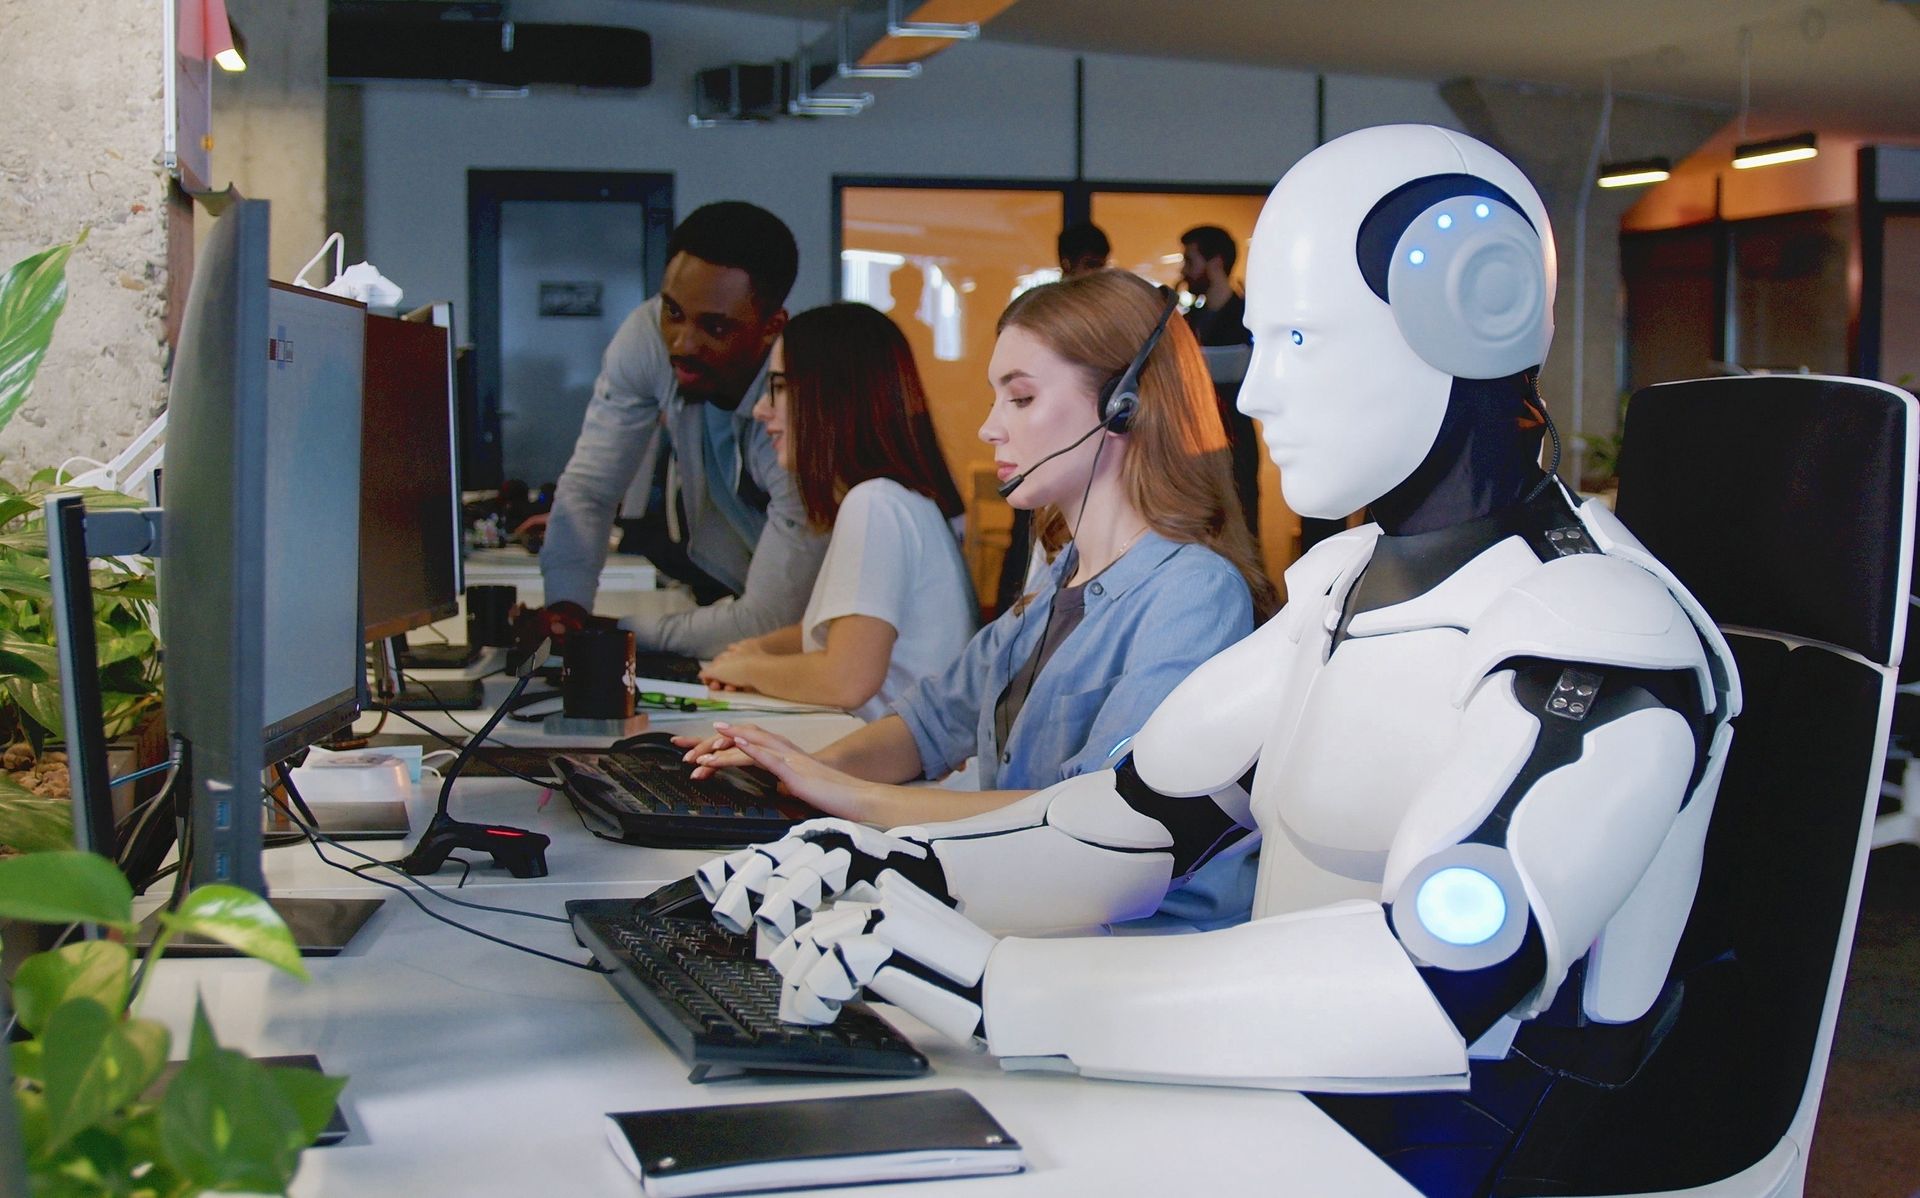 Kollege Roboter arbeitet im Büro mit menschlichen Mitarbeiterinnen und Mitarbeitern zusammen